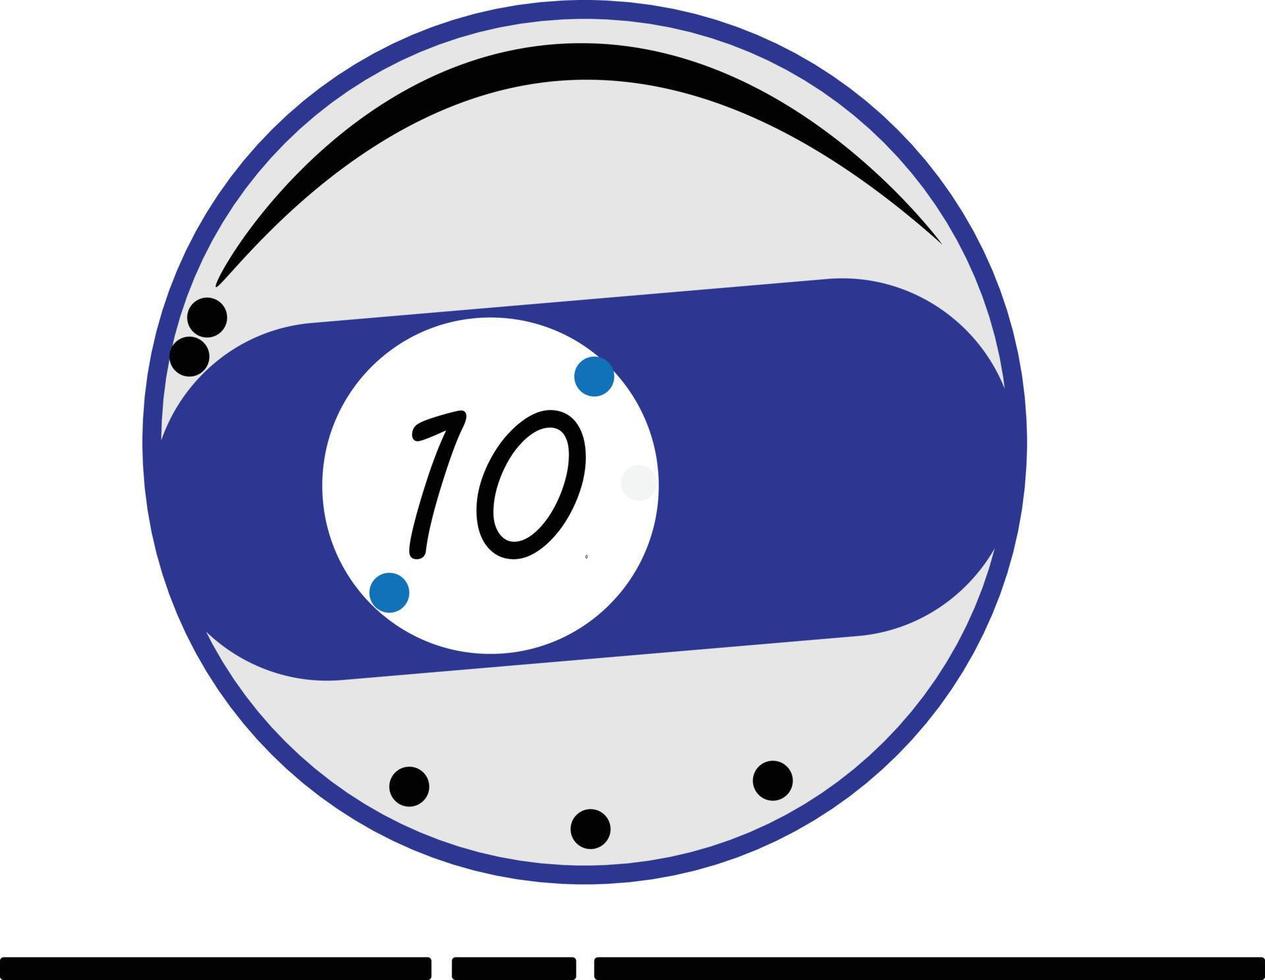 vector van biljartbal serie, vector van de nummer tien biljartbal. geweldig voor pictogrammen, symbolen en tekens voor poolspelers